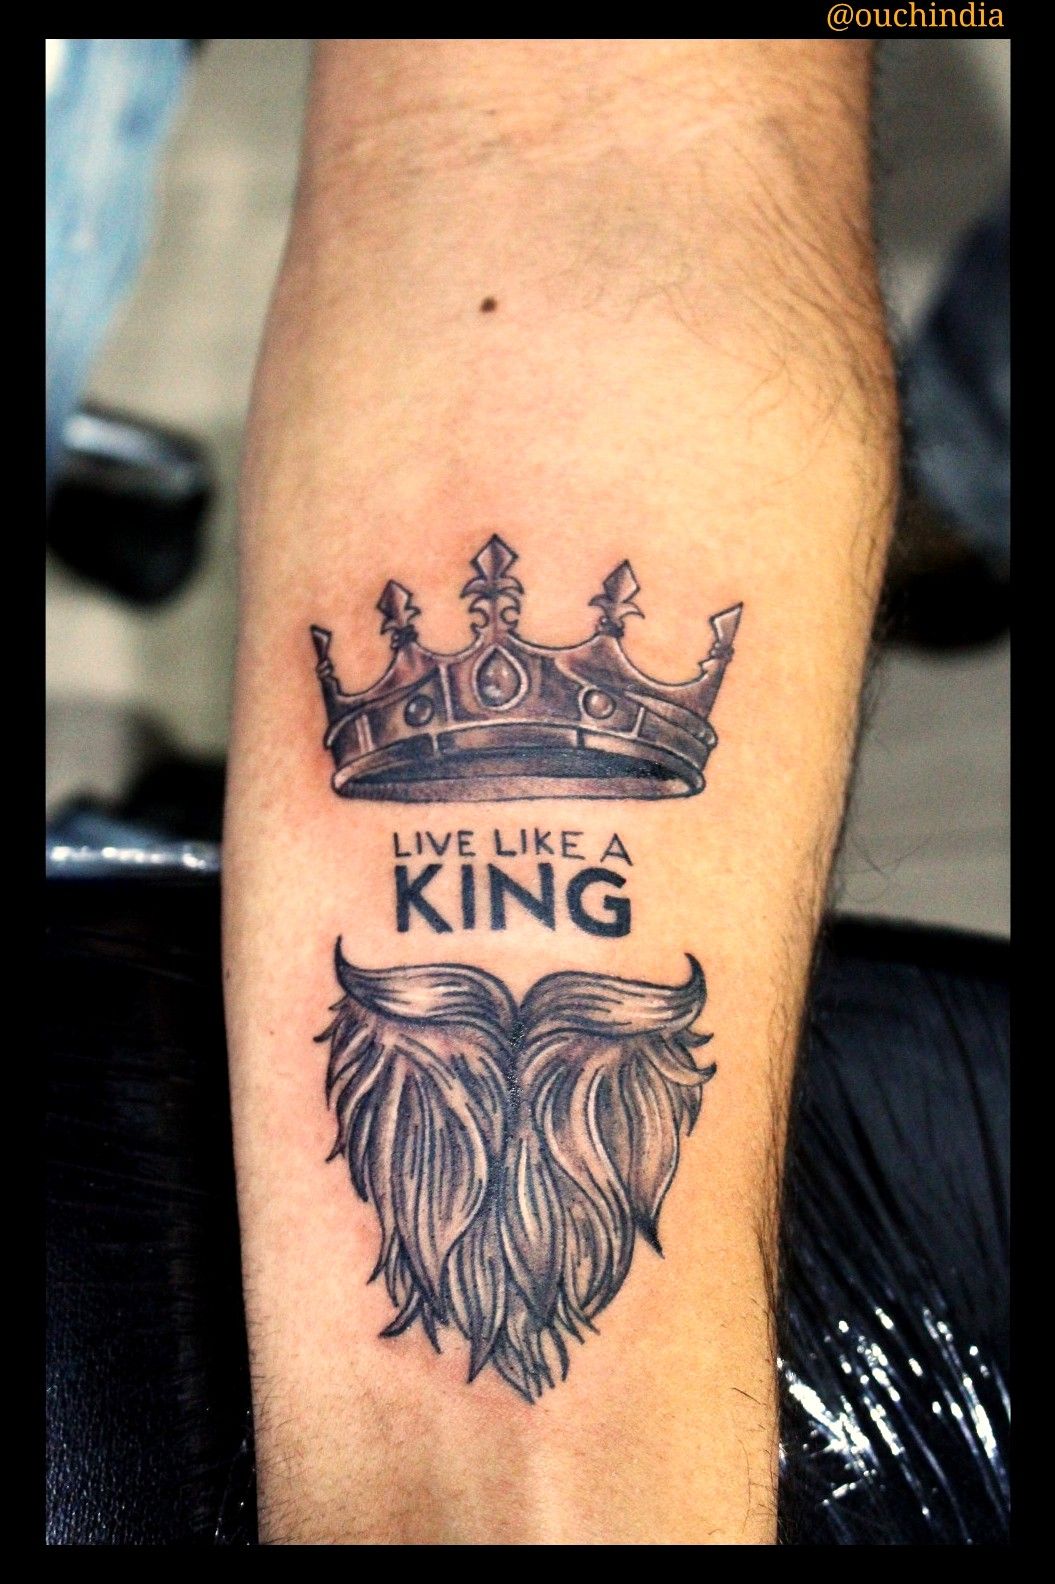 Live like a king tattoo